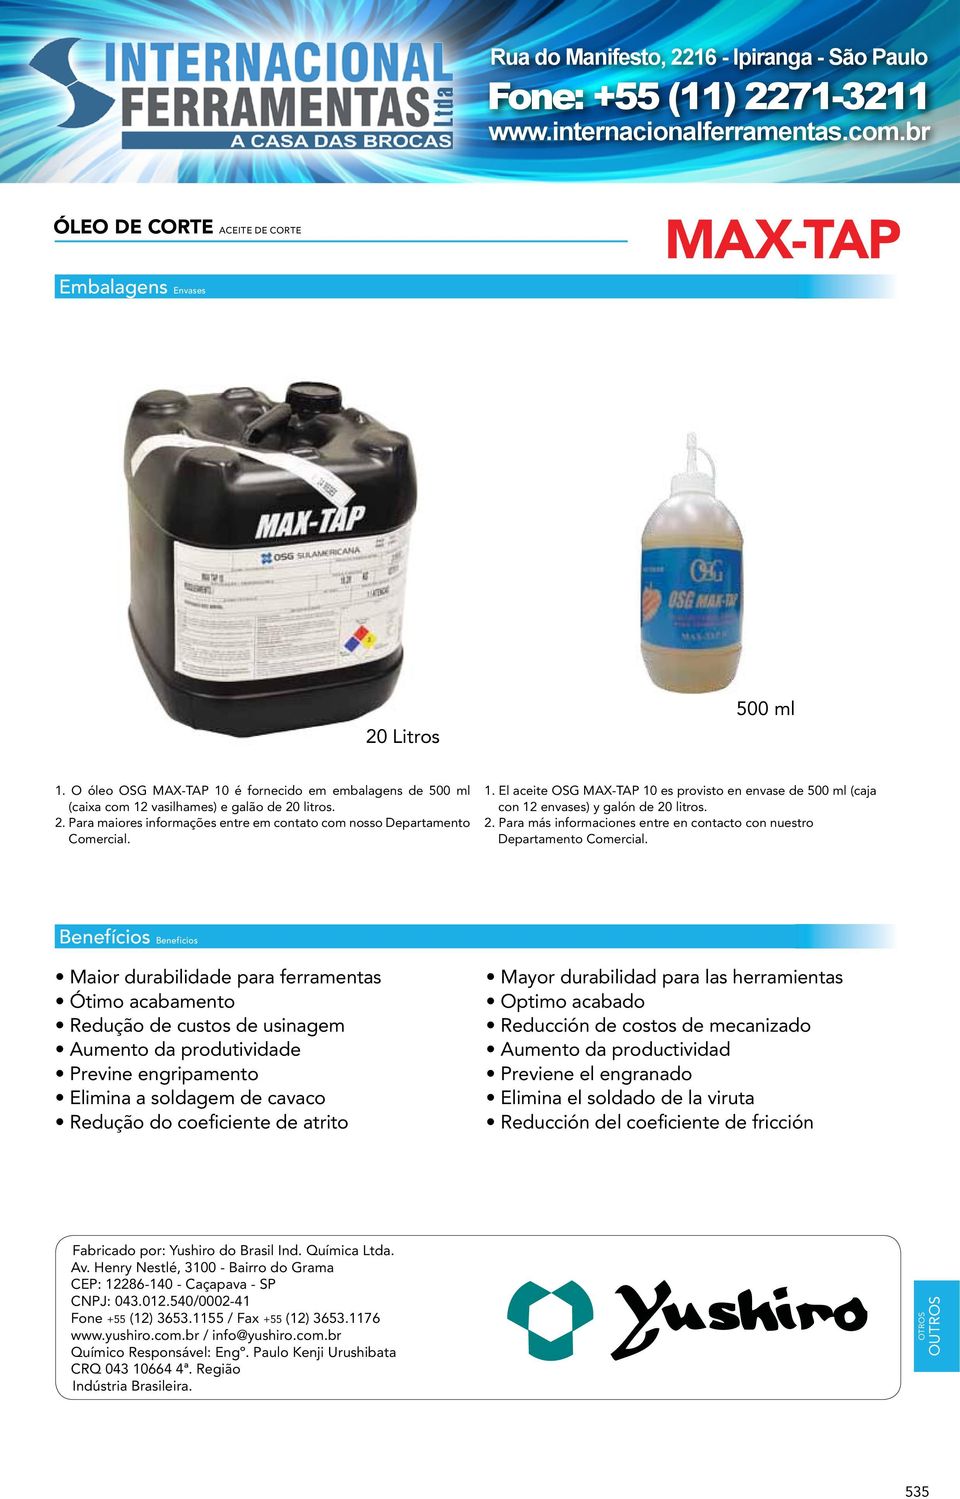 El aceite OSG MAX-TAP 10 es provisto en envase de 500 ml (caja